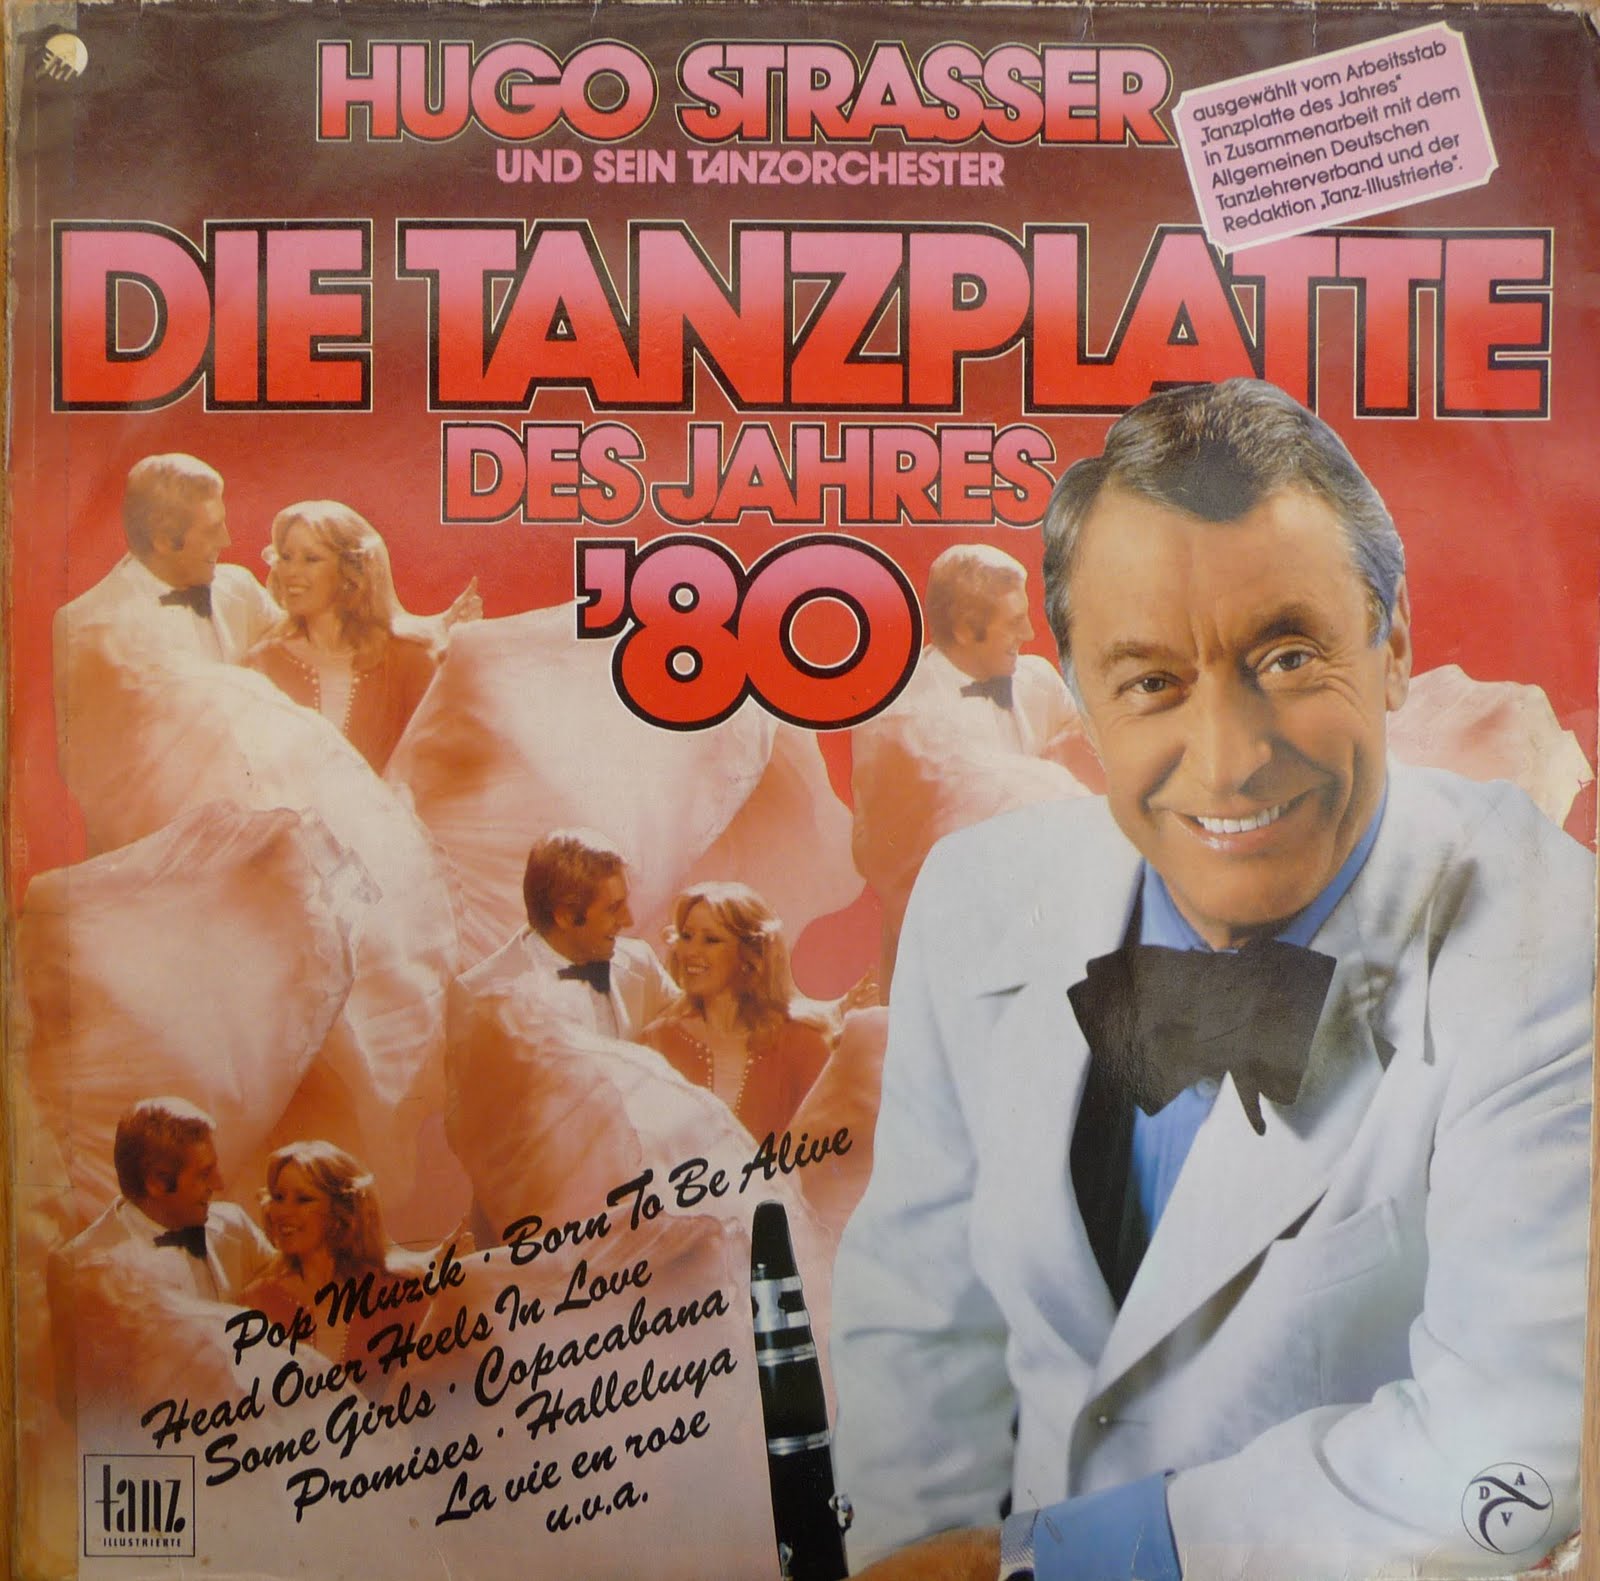 Hugo strasser. Hugo Strasser фото. Hugo Strasser Gold. Hugo Strasser und sein Tanzorchester - nah neh neh обложка. Hugo Strasser Gold collection.